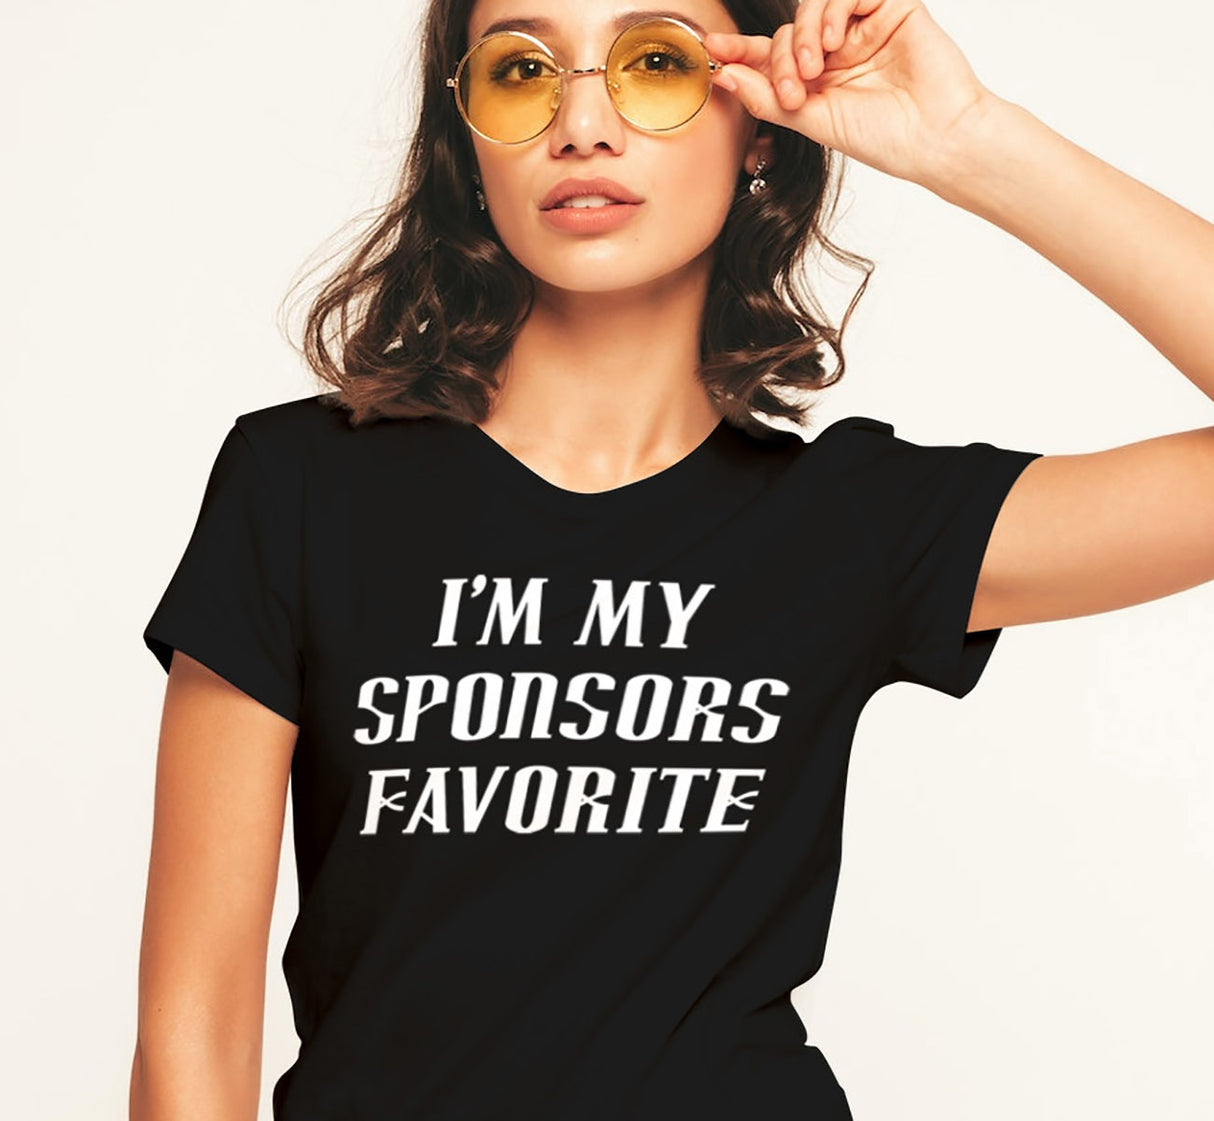 ldTs- Sponsors Favorite - Ladies T's